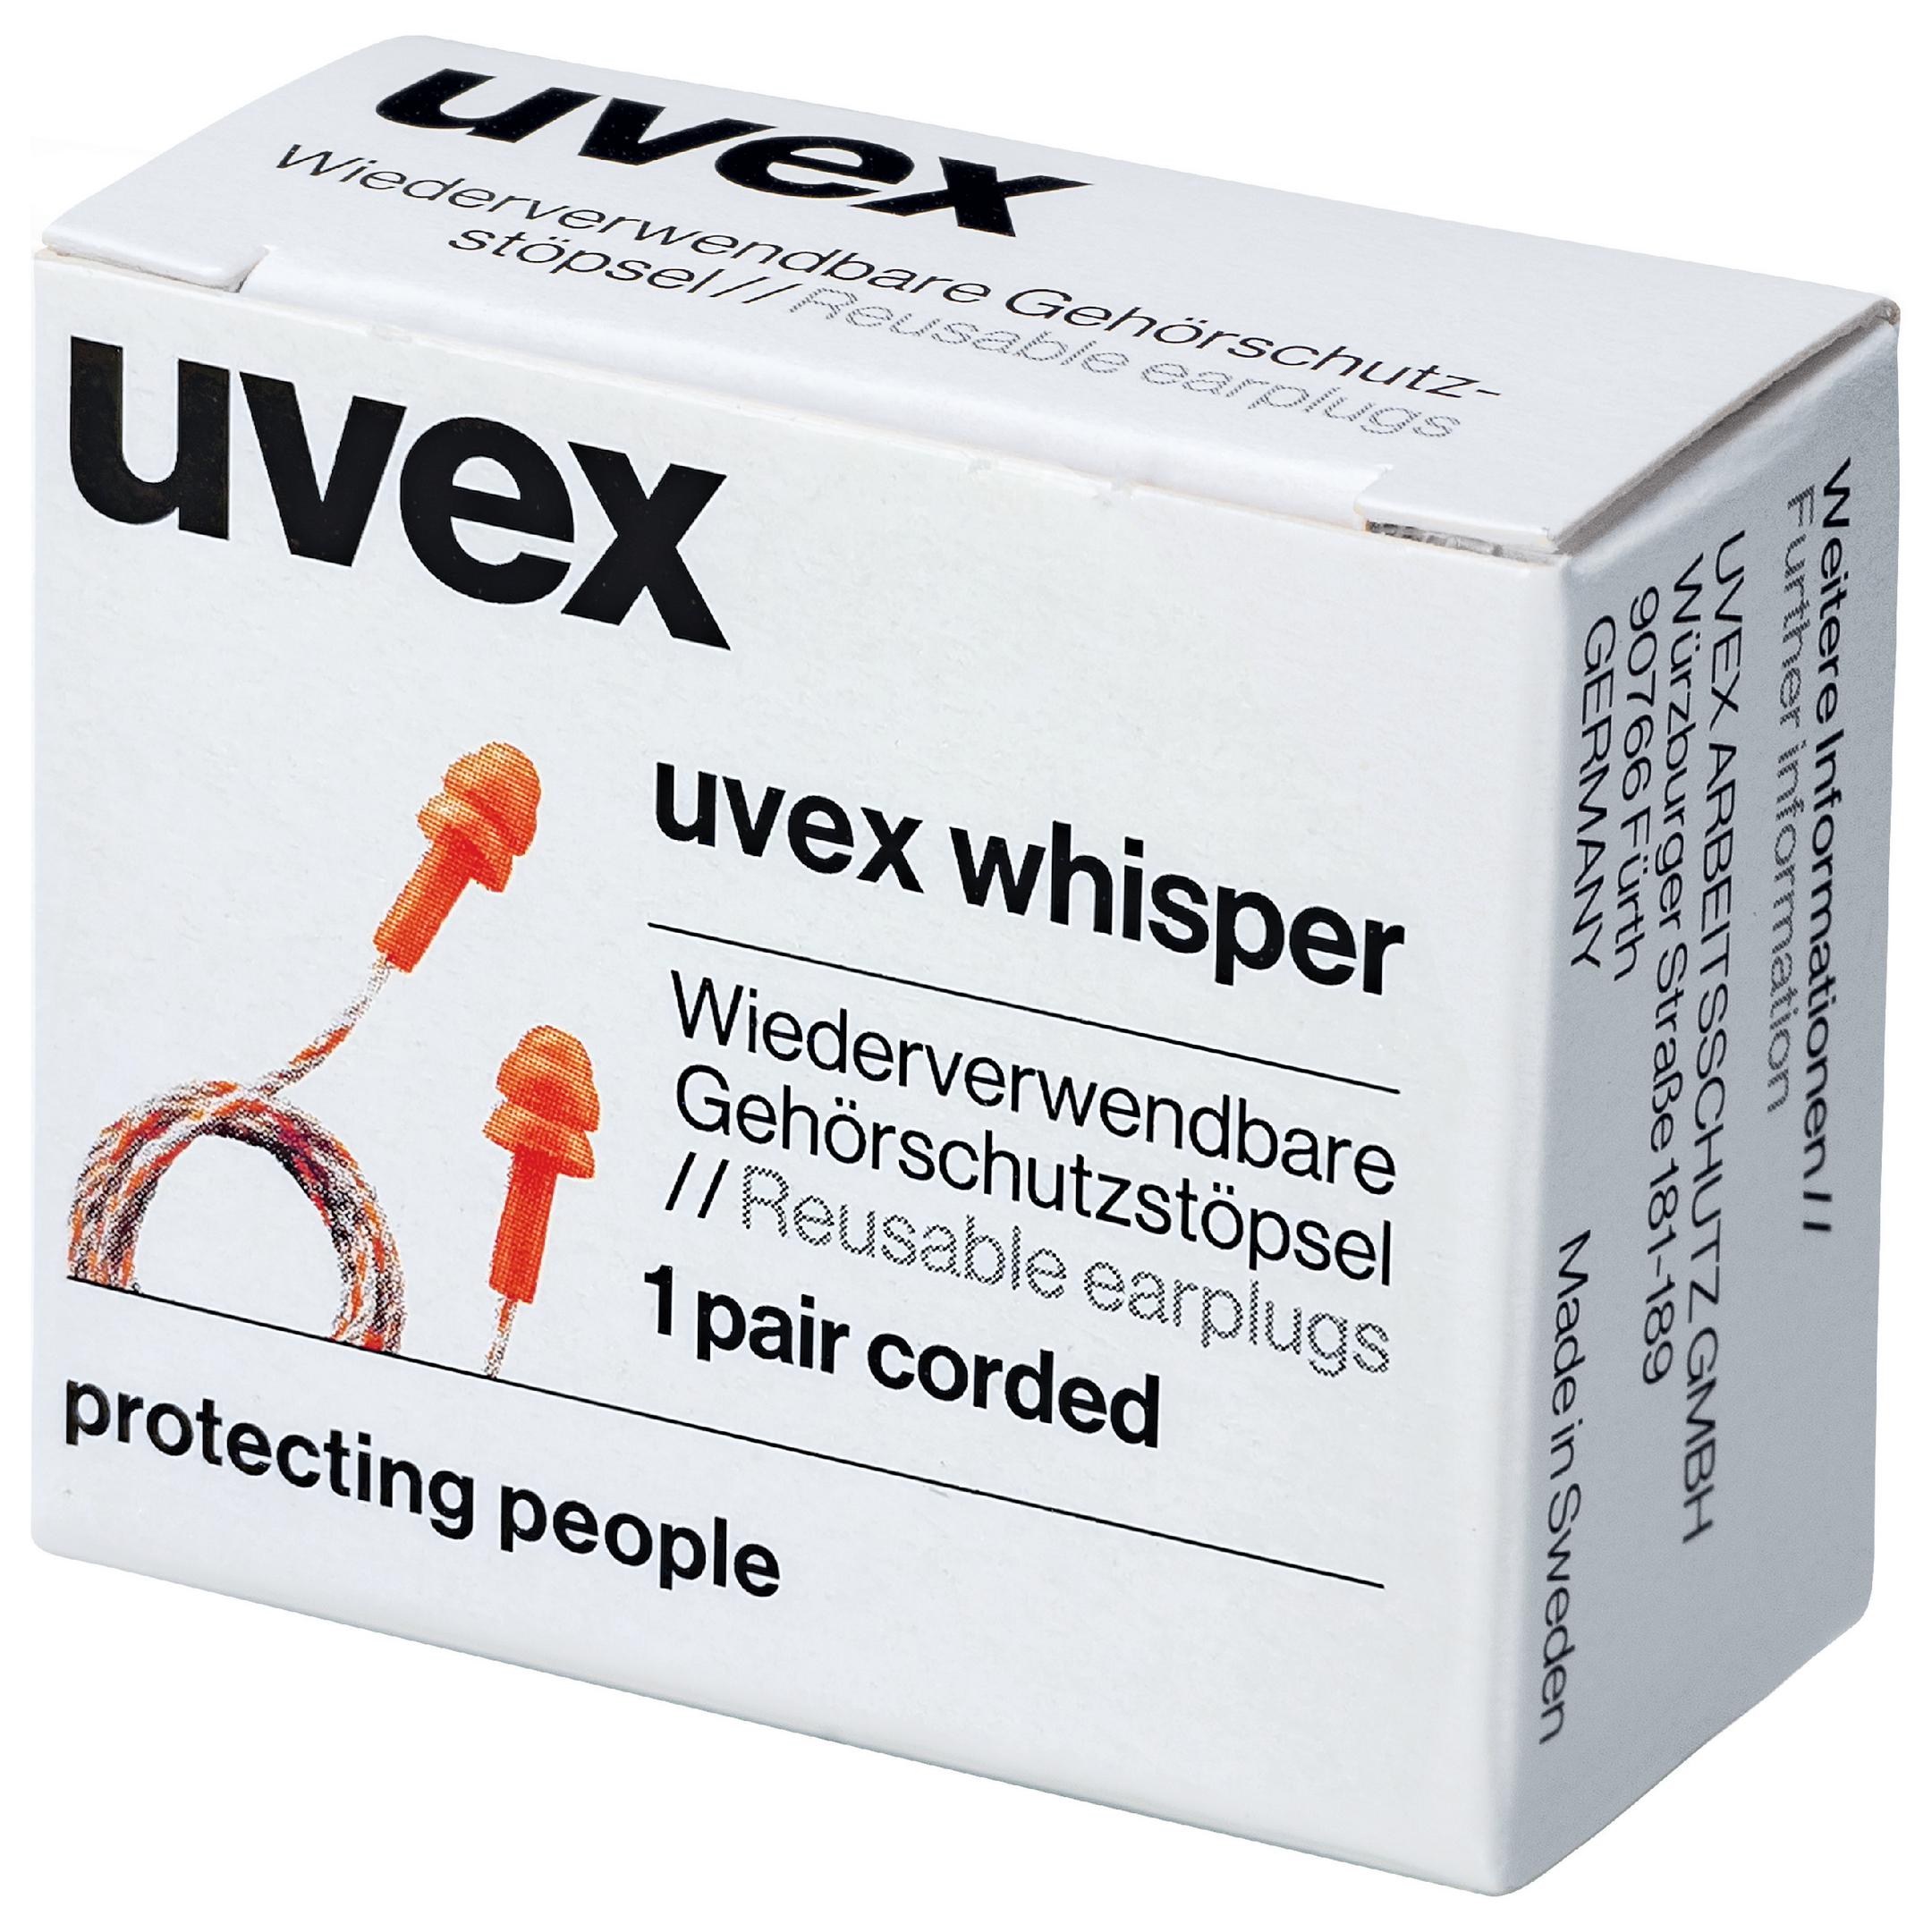 Uvex Whisper Gehörschutzstöpsel Mehrweg mit Kordel SNR 23